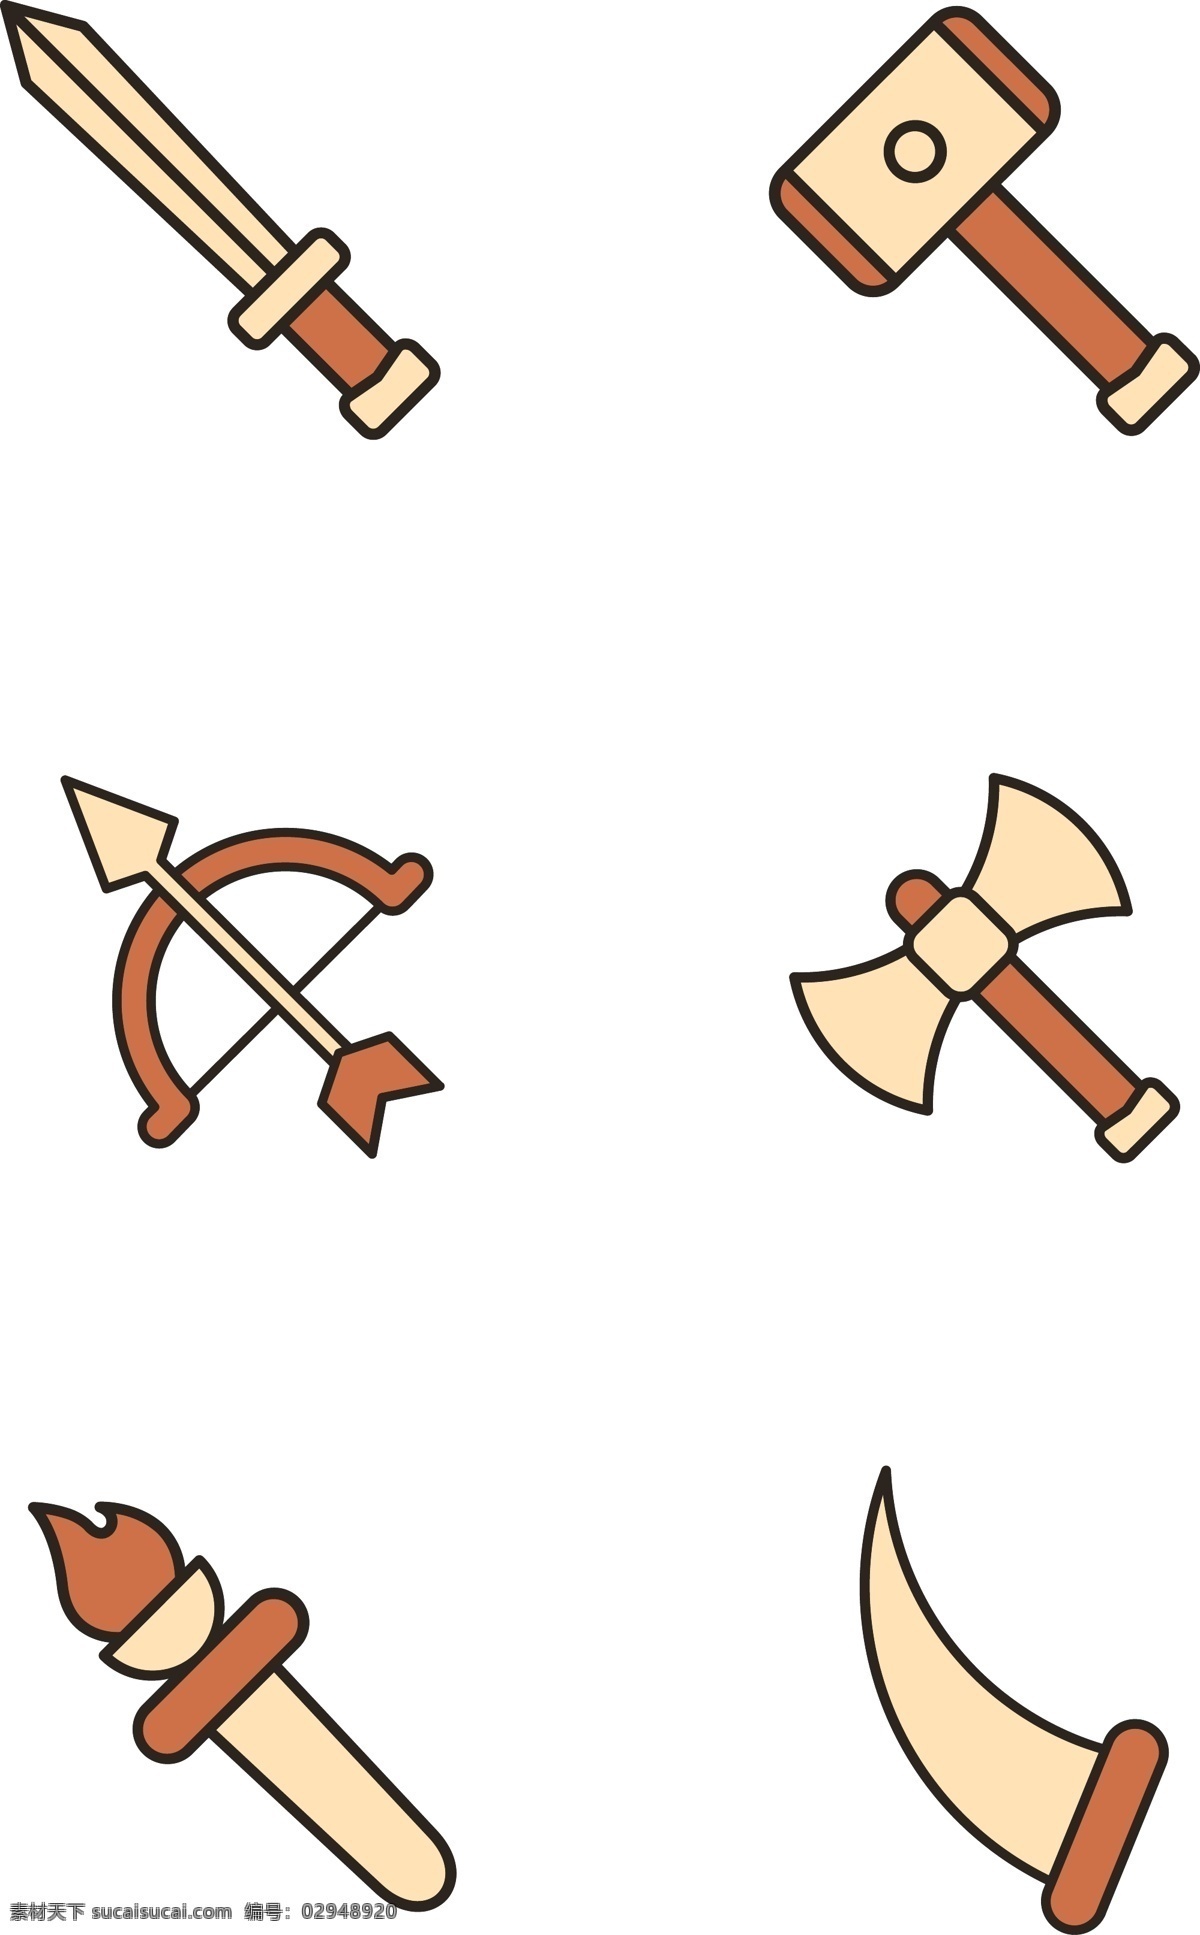 简约 风 卡通 武器 矢量图 扁平化 拟物 卡通的 长剑 石锤 弓箭 斧头 火炬 长刀 图标 有趣的 可爱的